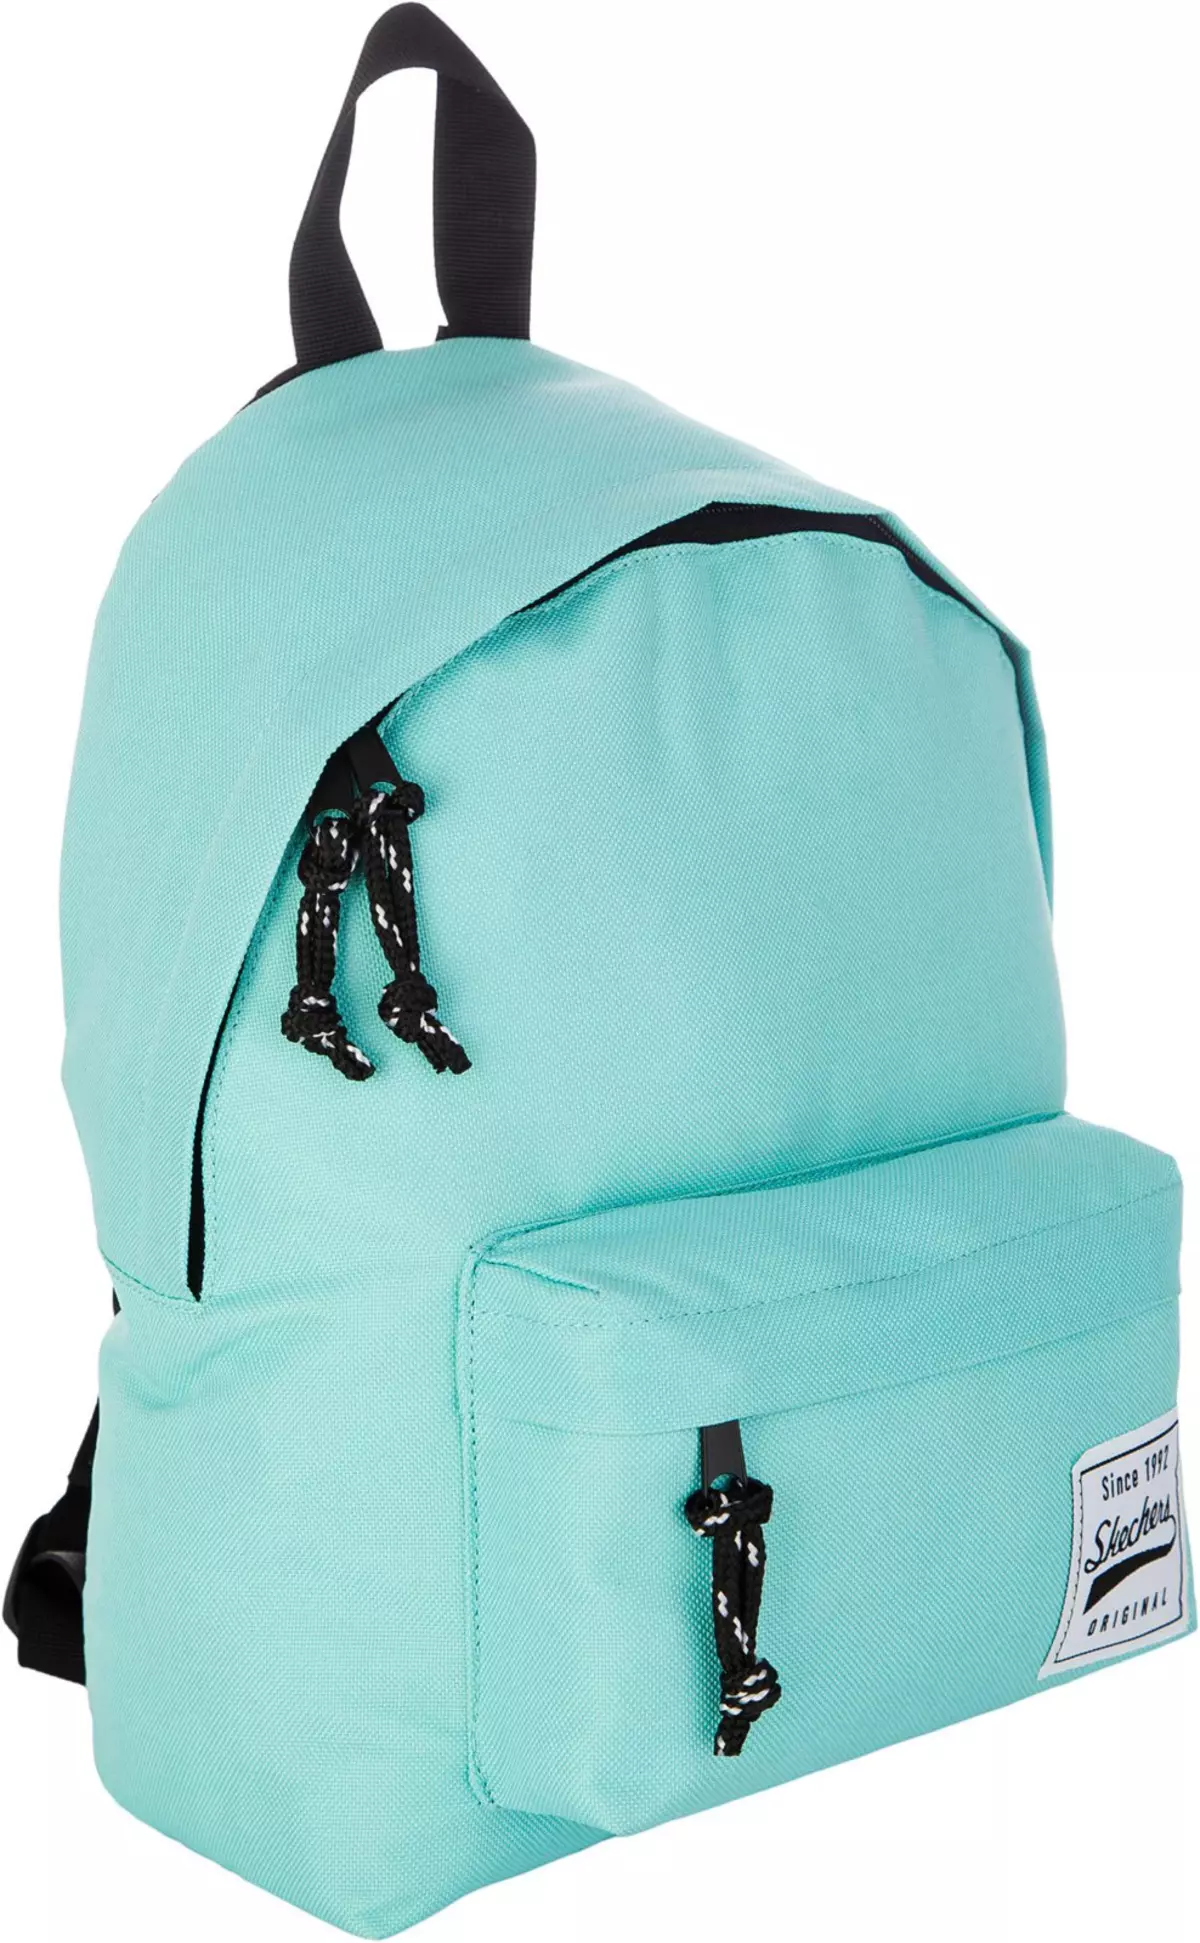 Skechers backpack: Vakadzi vatema uye vakasvibira, grey uye tsvuku, diki yebhuruu uye mamwe marudzi, ongororo 15455_25